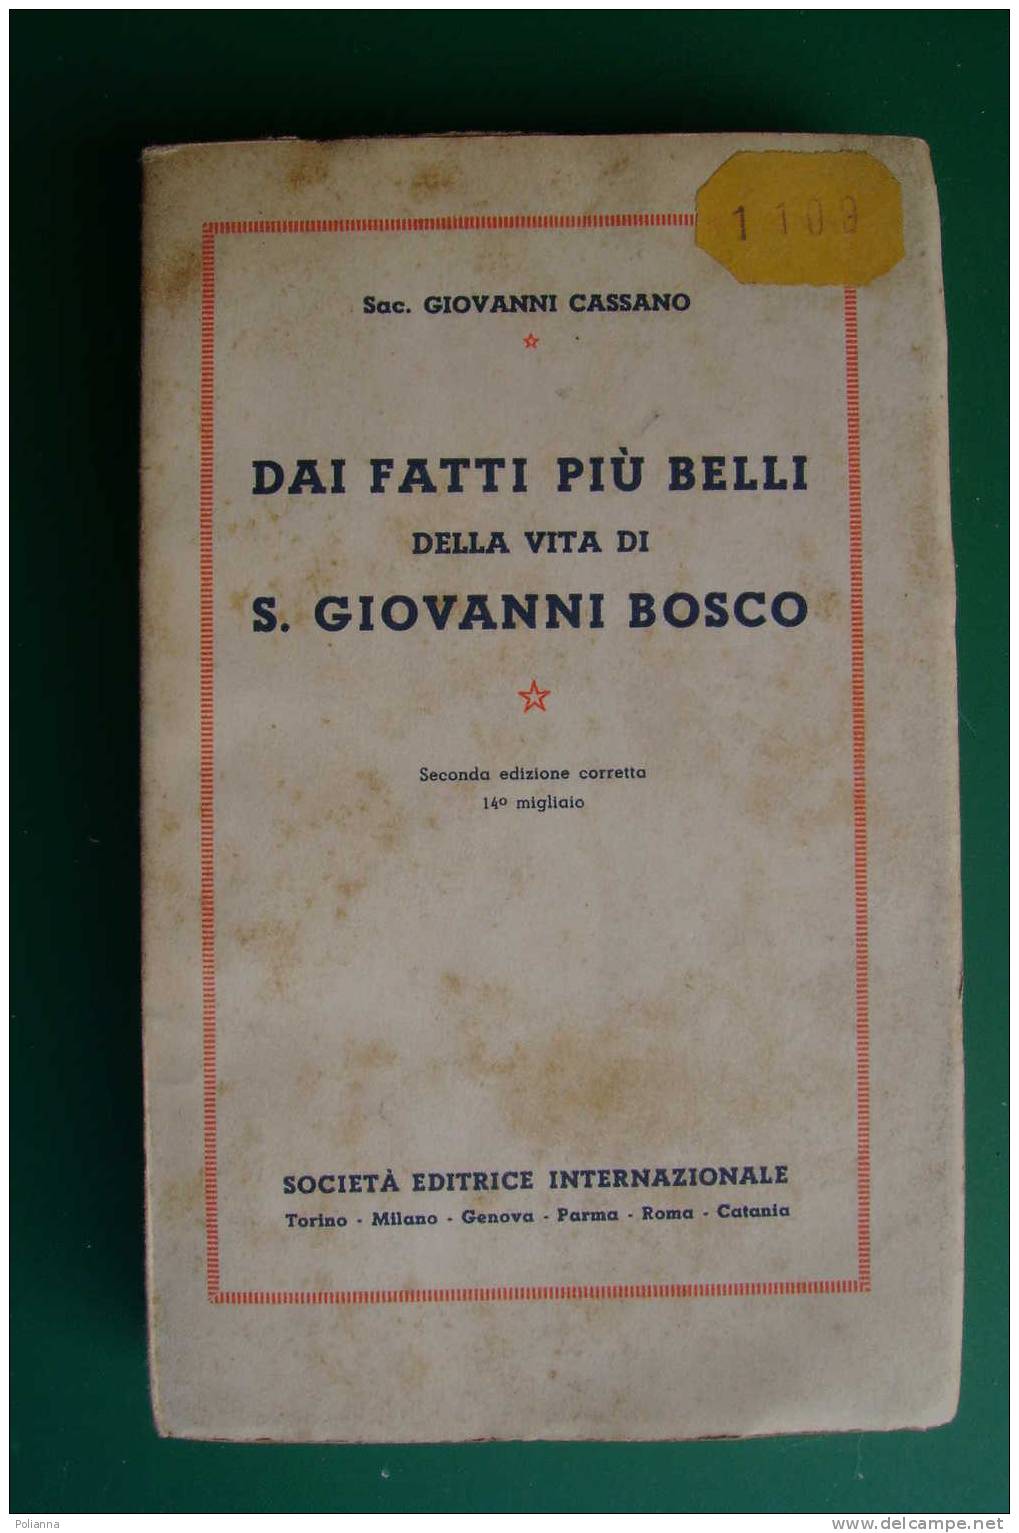 PDD/29 Sac. Giovanni Cassano DAI FATTI PIU' BELLI Della Vita Di S.GIOVANNI BOSCO S.E.I. 1934 - Religion